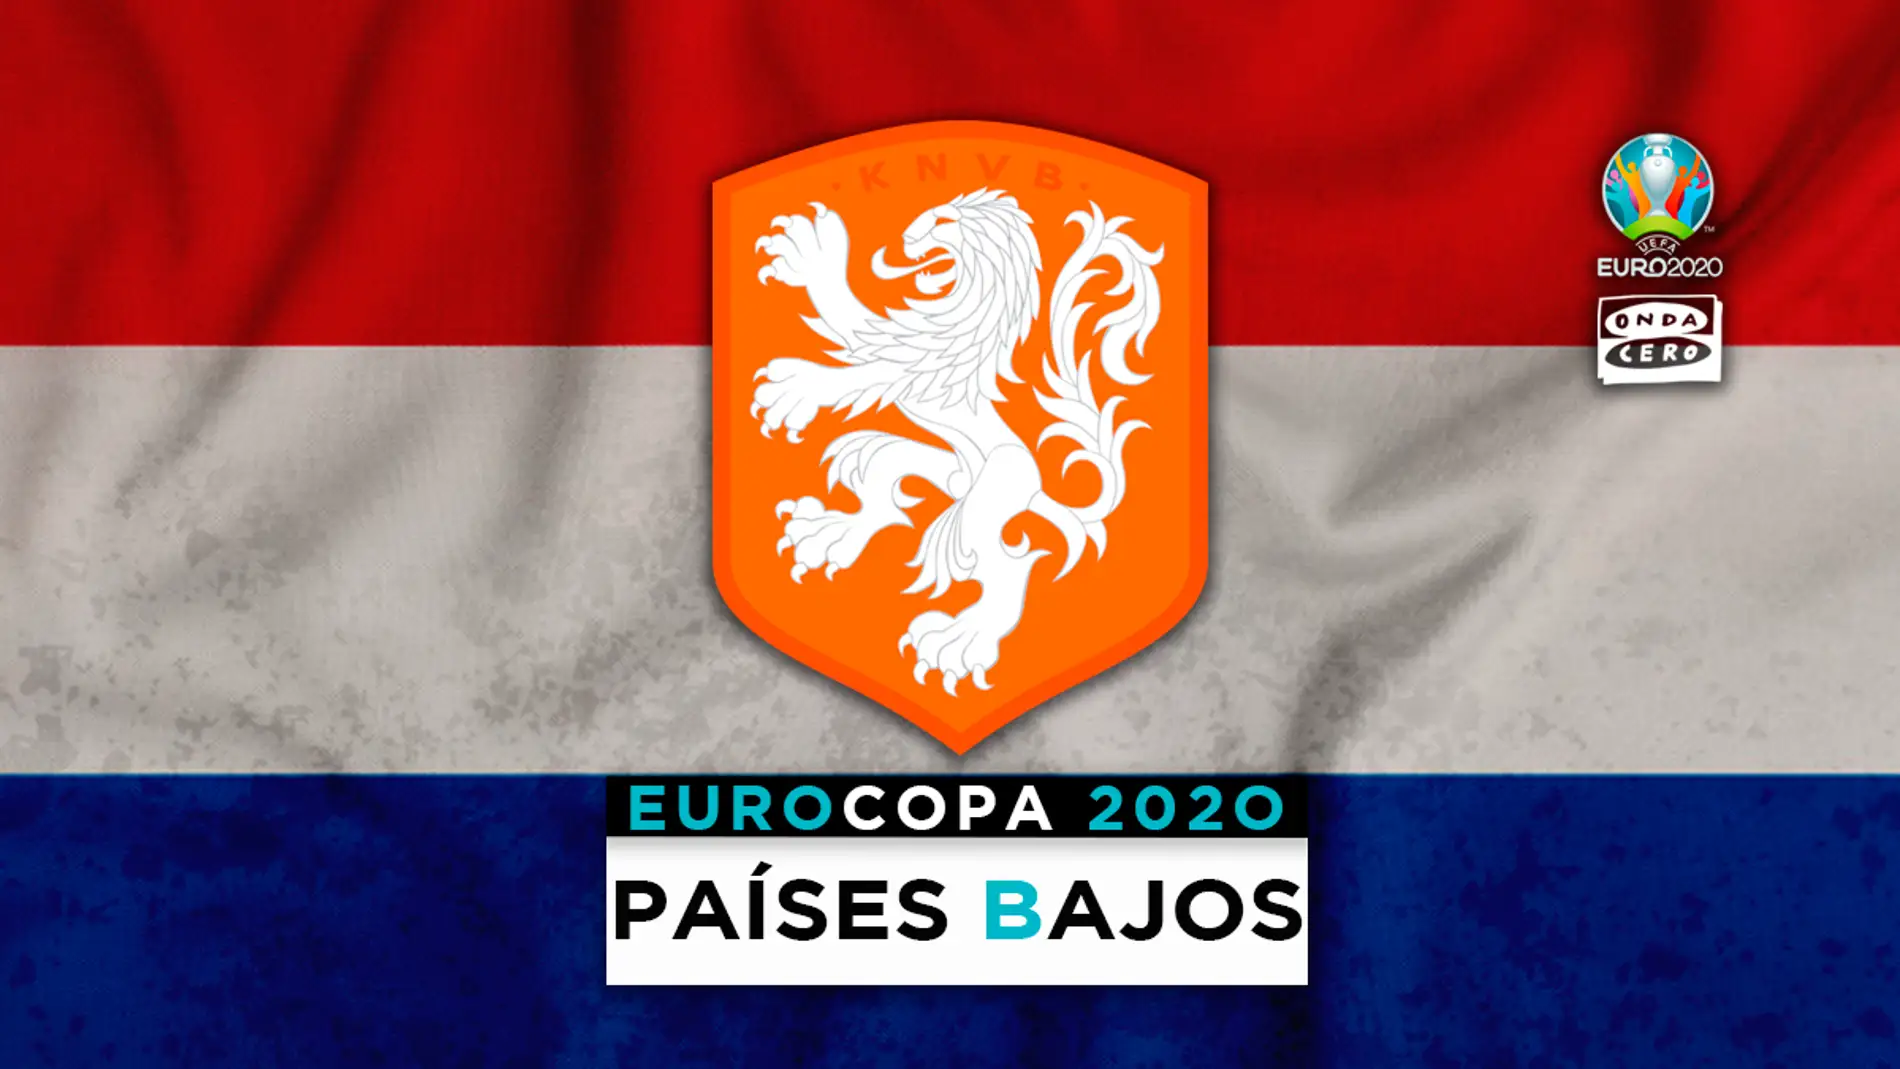 Holanda en la Eurocopa: alineación probable, convocatoria y lista completa de jugadores